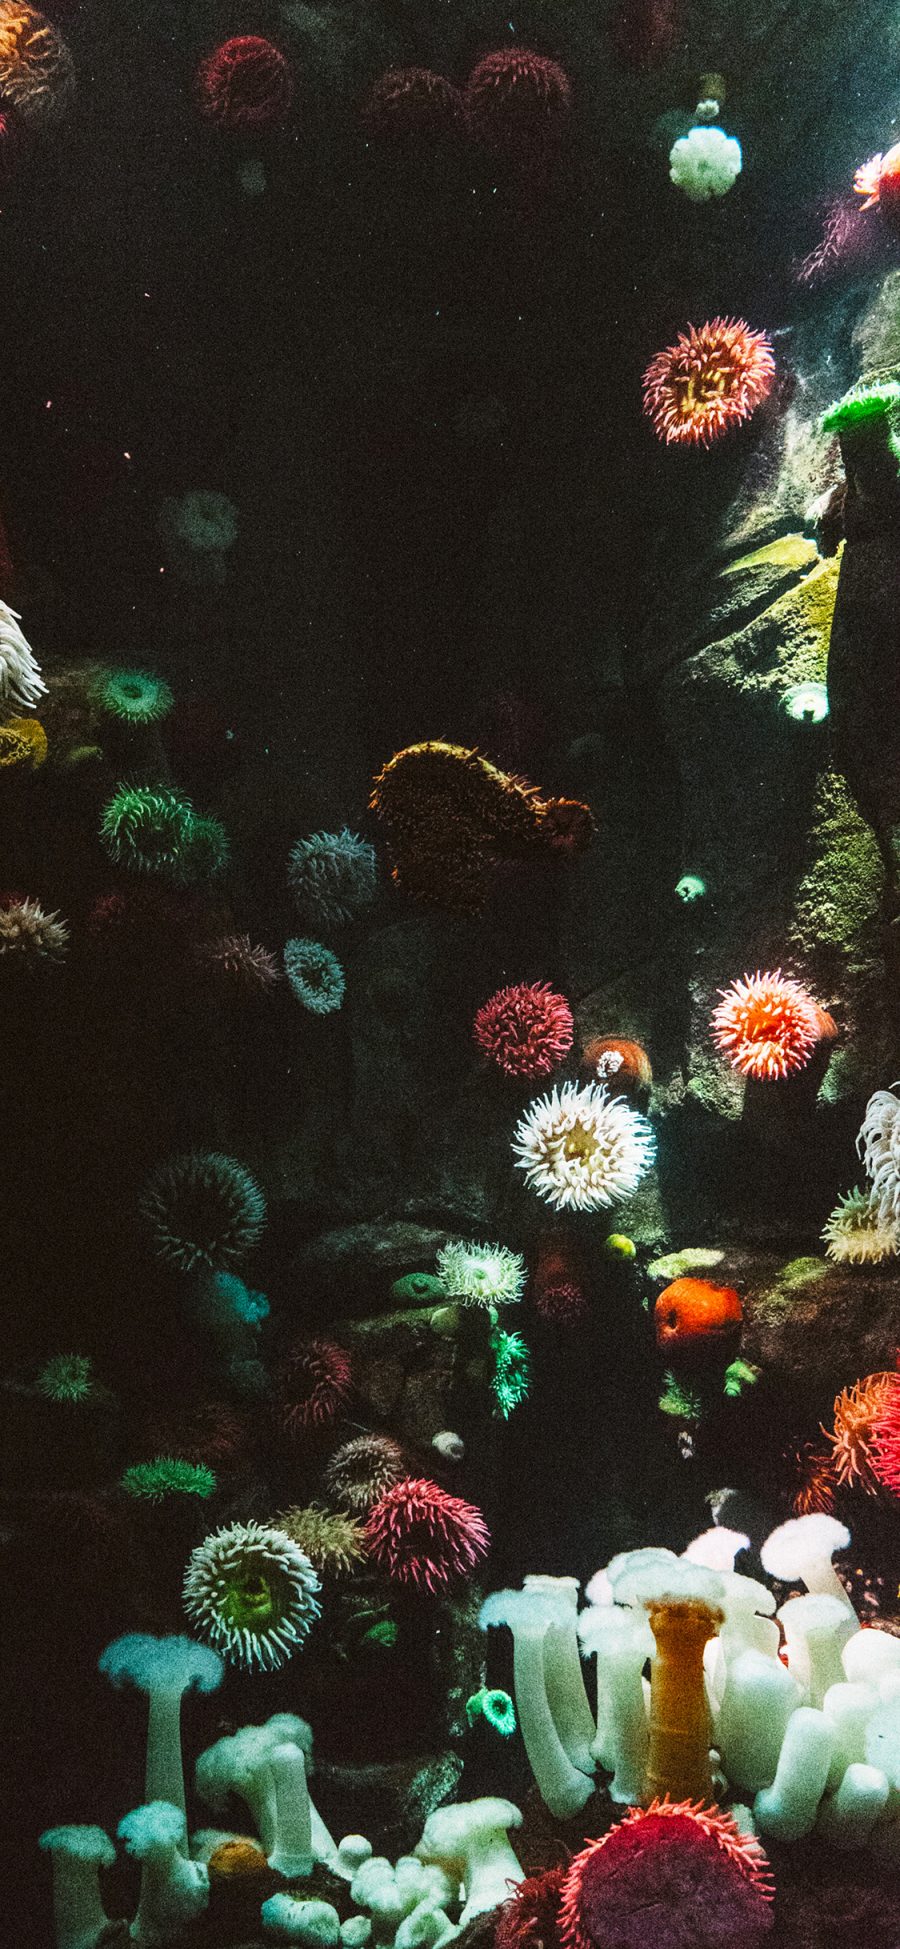 [2436×1125]珊瑚虫 珊瑚 色彩 海底 苹果手机壁纸图片